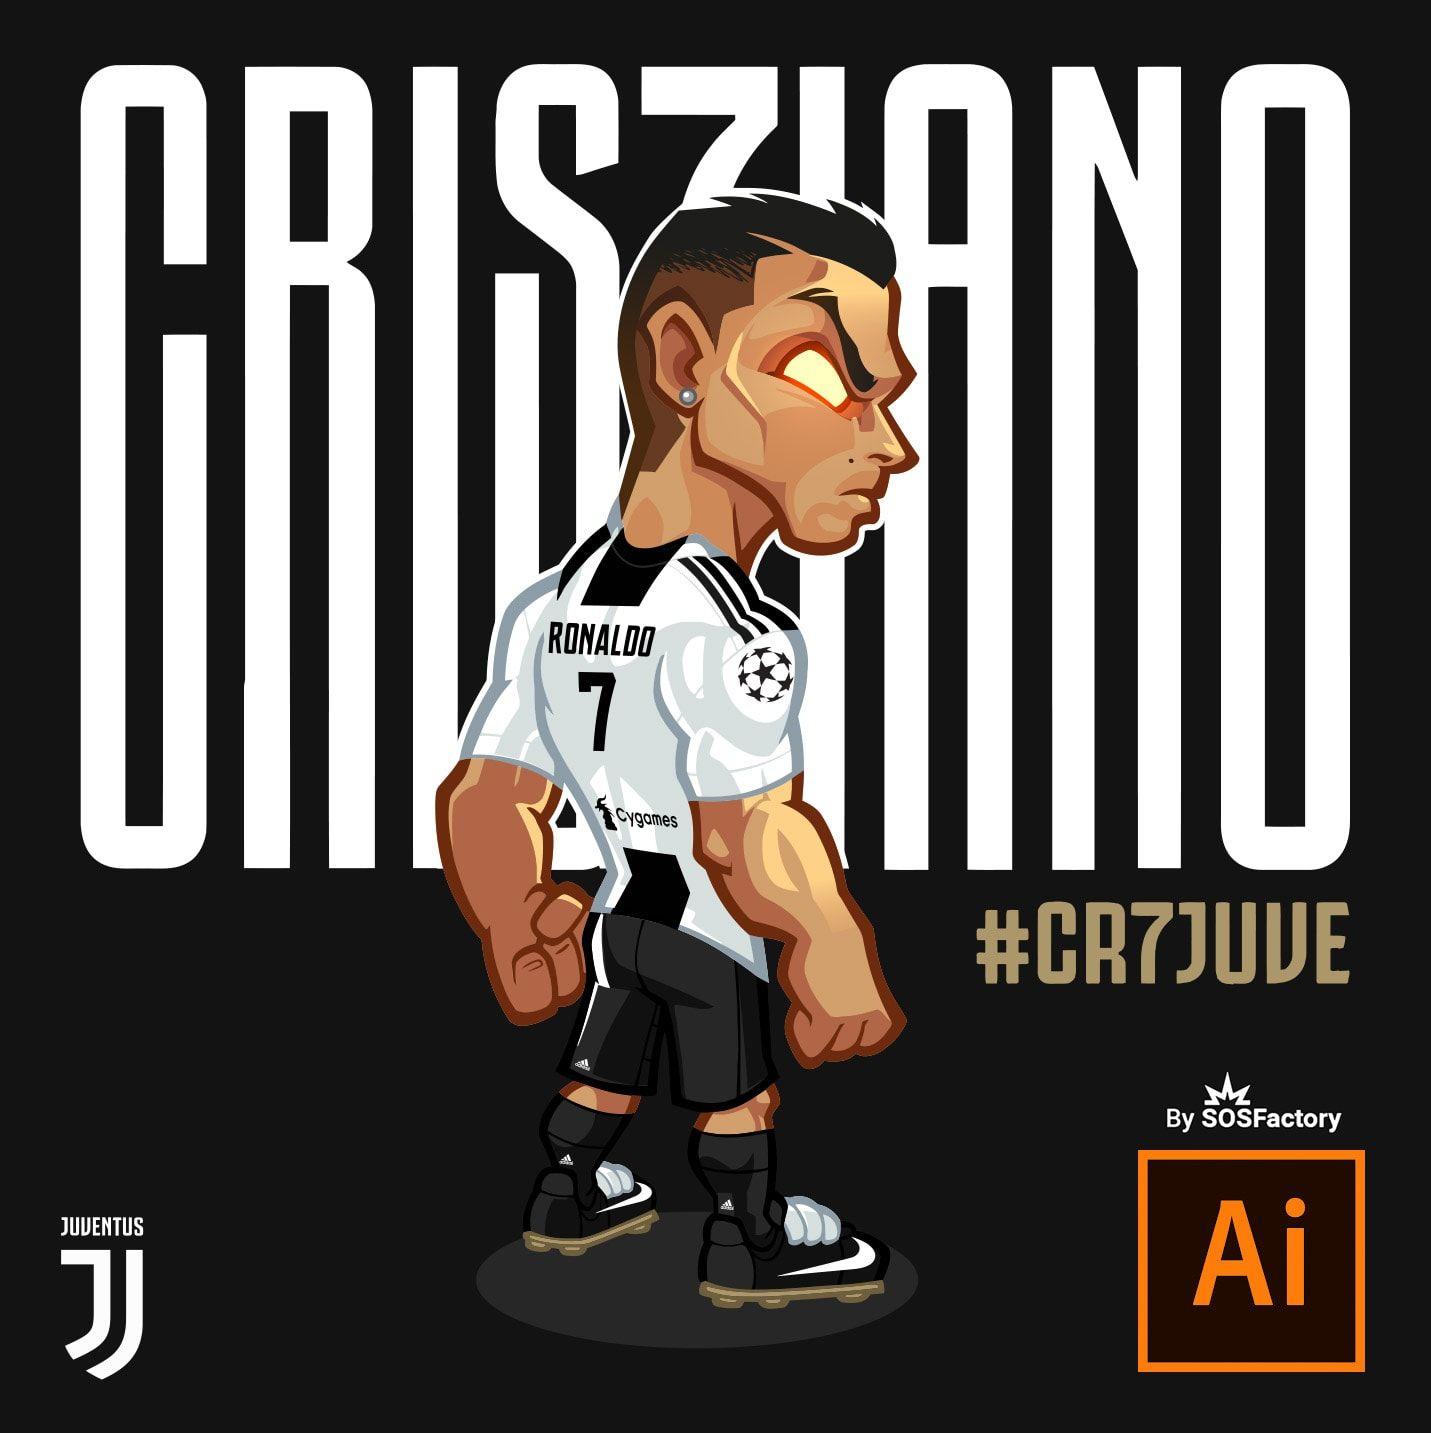 Cristiano Ronaldo Mascot